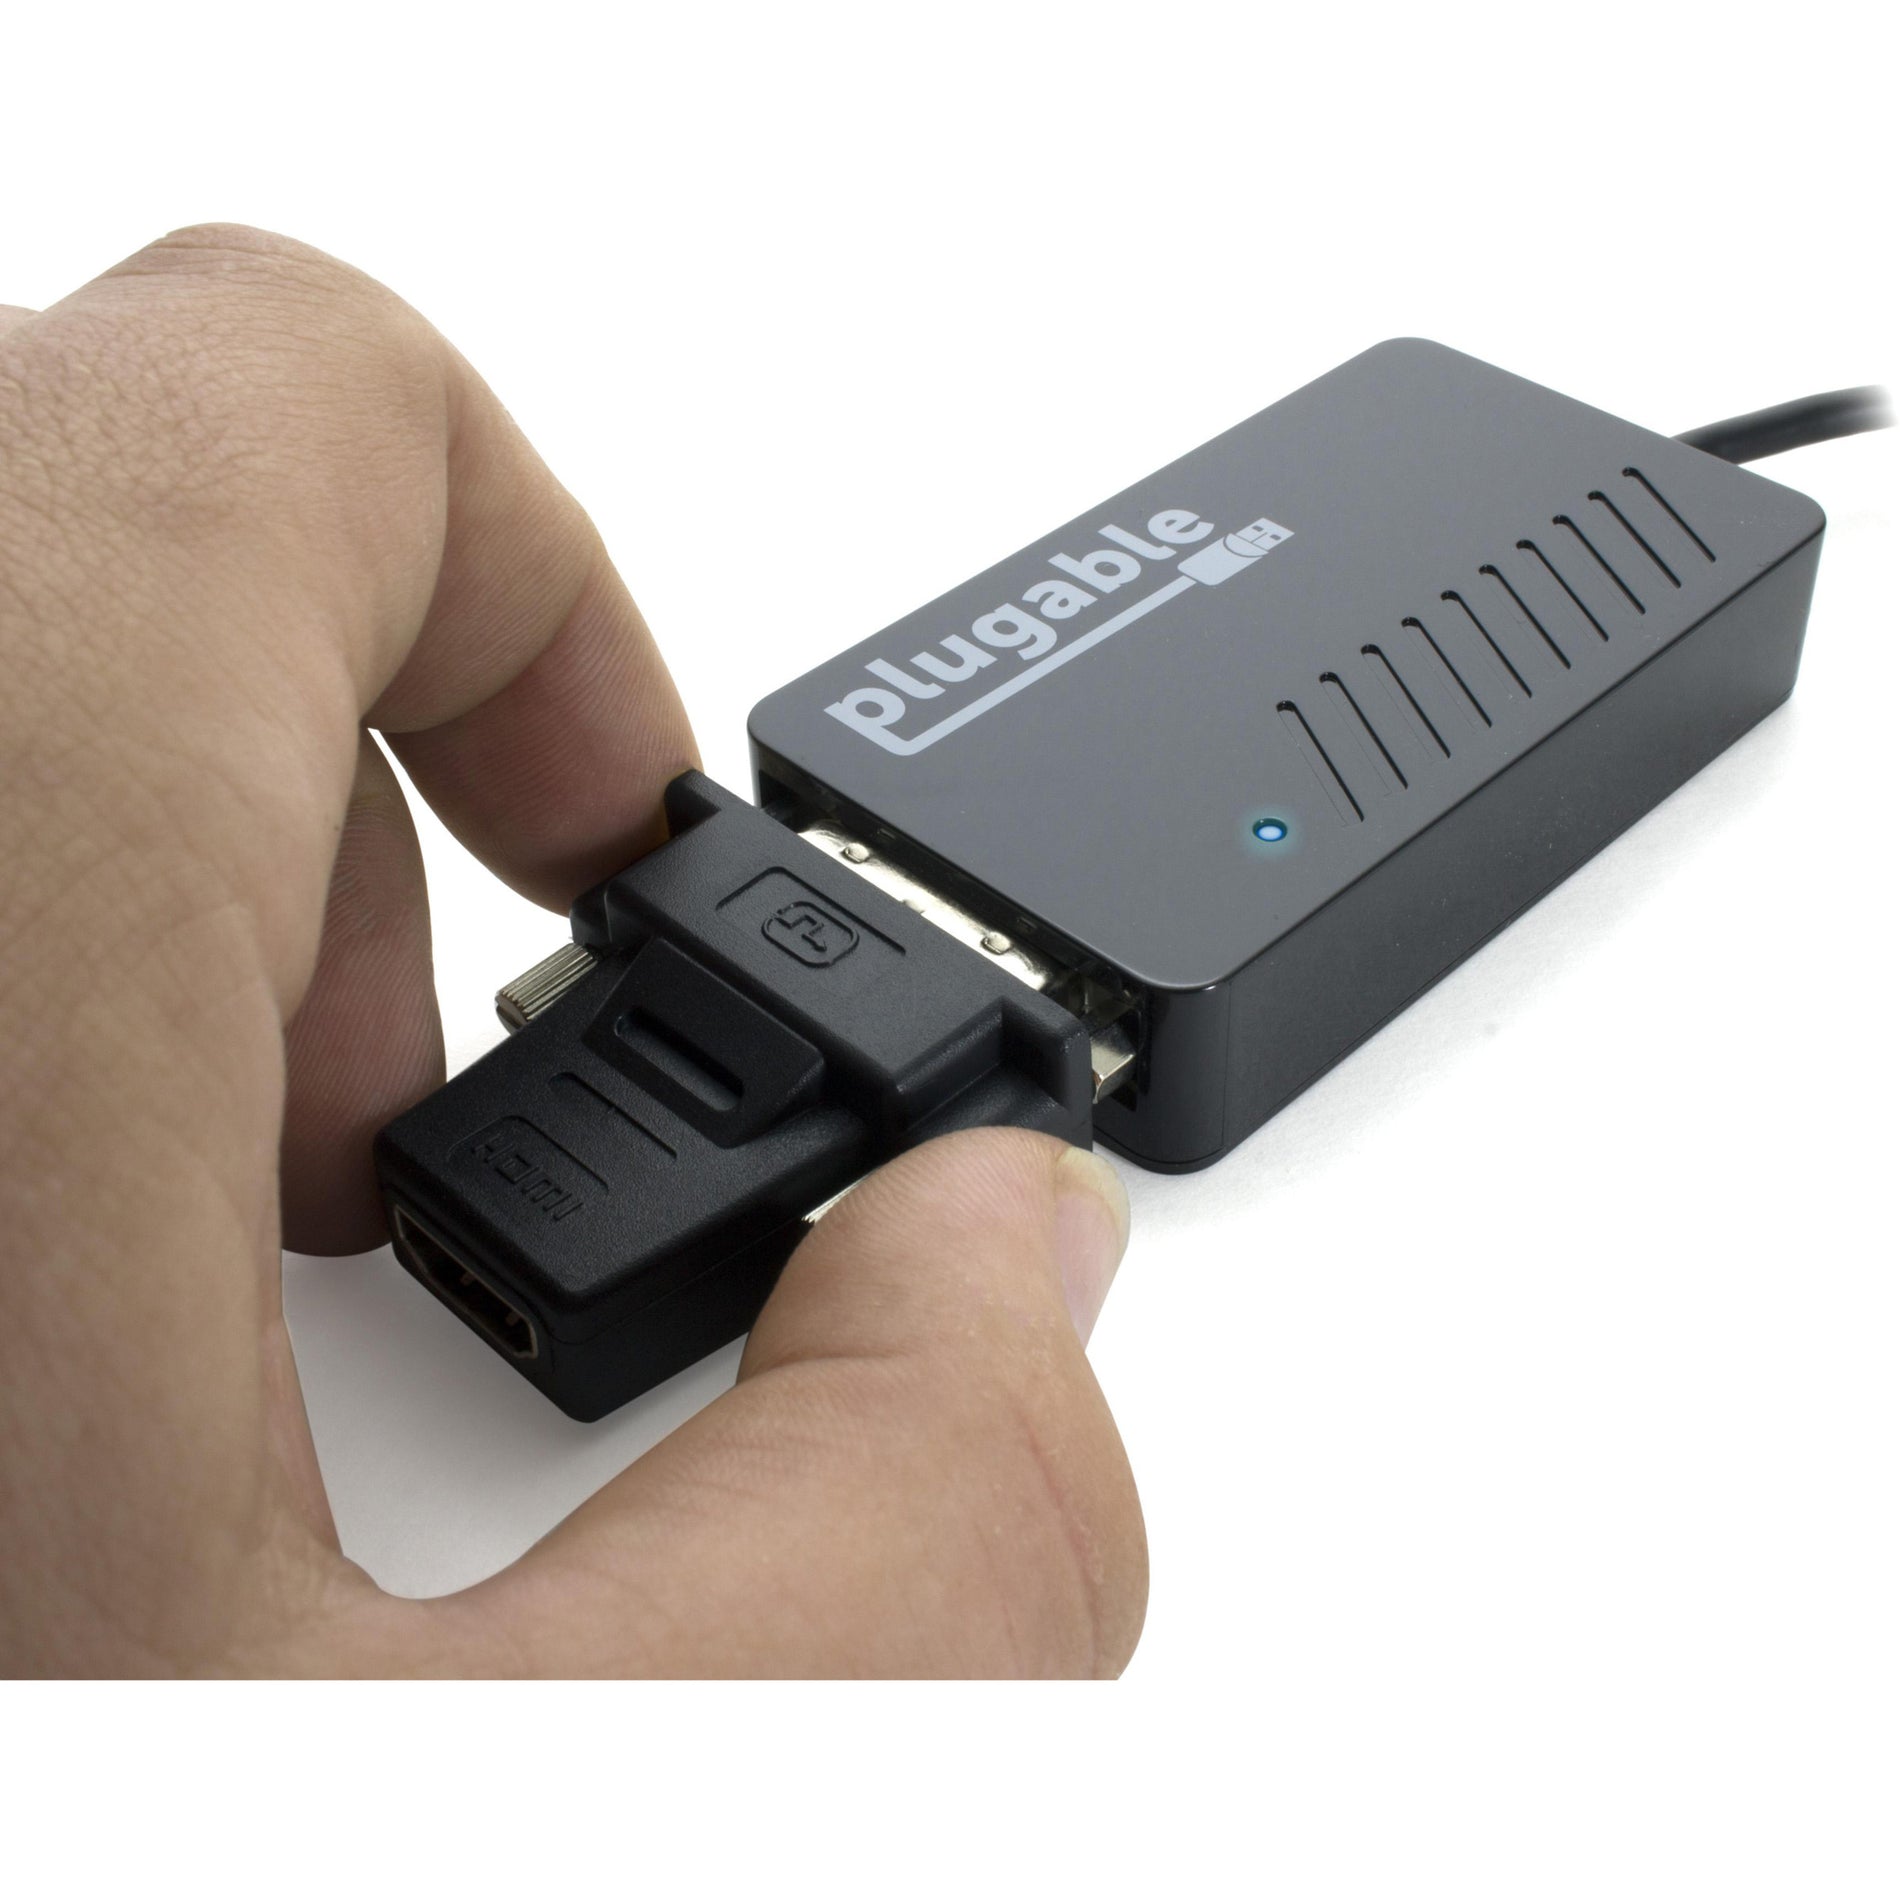 Adaptateur USB 3.0 HDMI/DVI/VGA Plugable UGA-3000 pour plusieurs moniteurs expansion facile de l'affichage pour PC